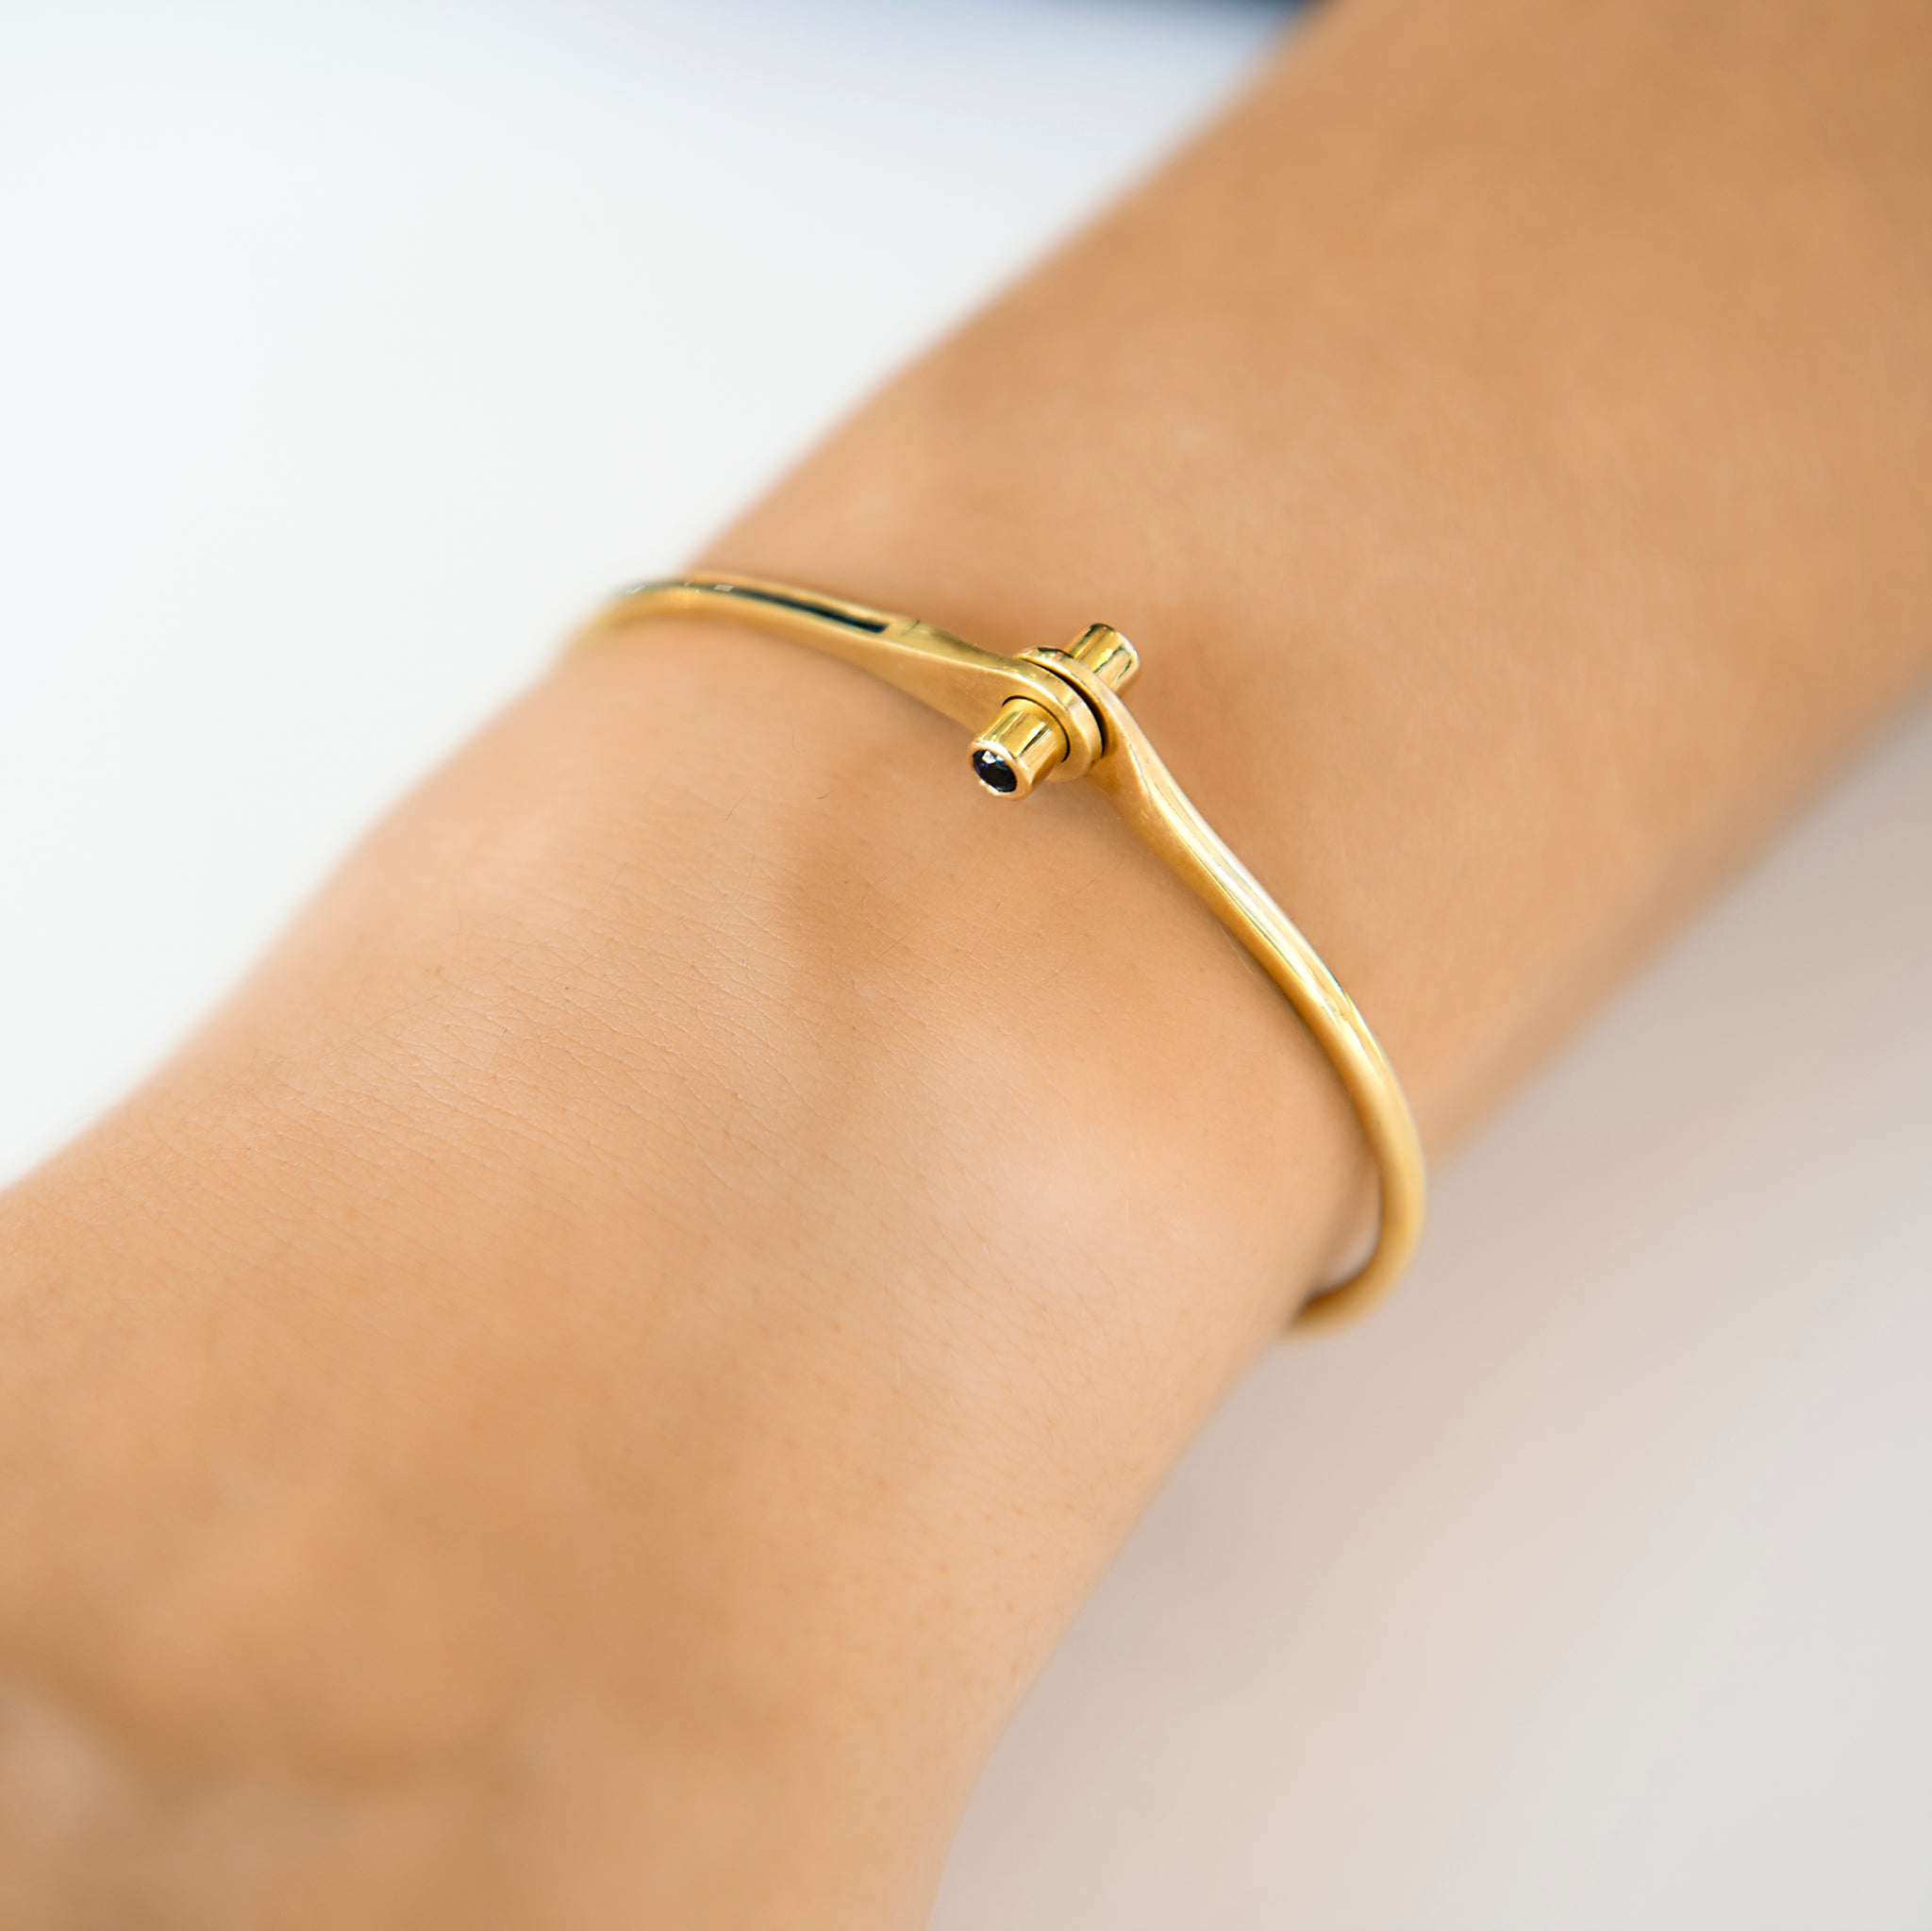 mykonsept VIP Series Gold Steel Handcuff Bracelet Set of 3 | Luxury Jewelry  Fashion - Trendyol